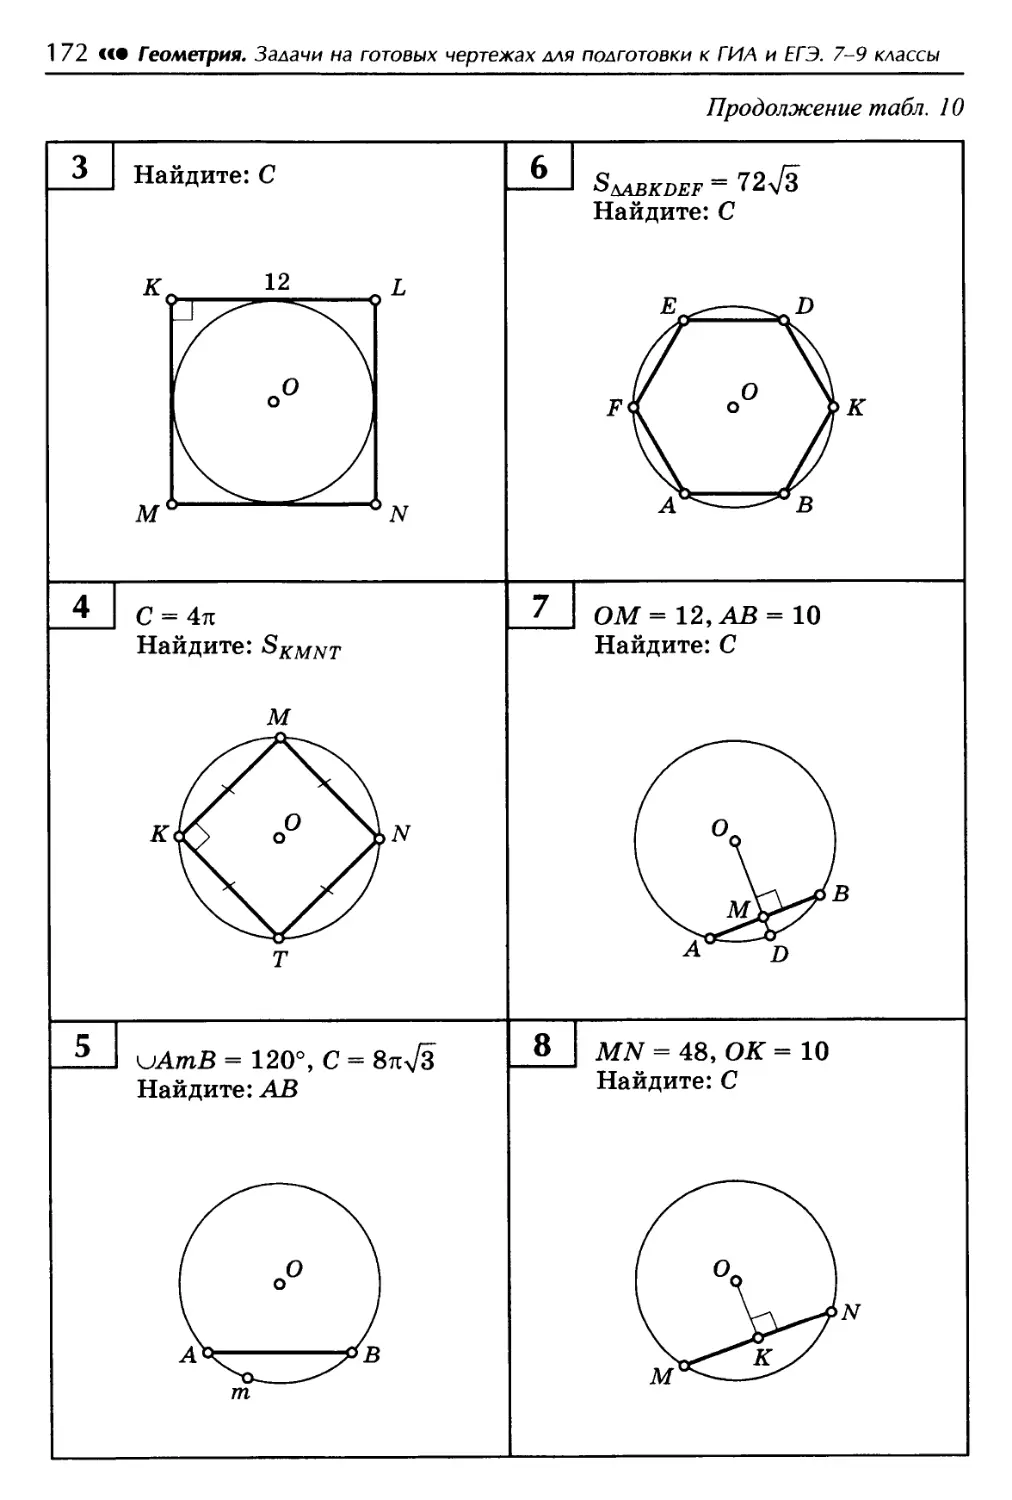 Самостоятельная работа по геометрии площадь круга. Решение задач на готовых чертежах 9 класс окружности. Задачи по готовым чертежам на длину окружности. Решение задач длина окружности и площадь круга 9 класс. Длина окружности, длина дуги на готовых чертежах.